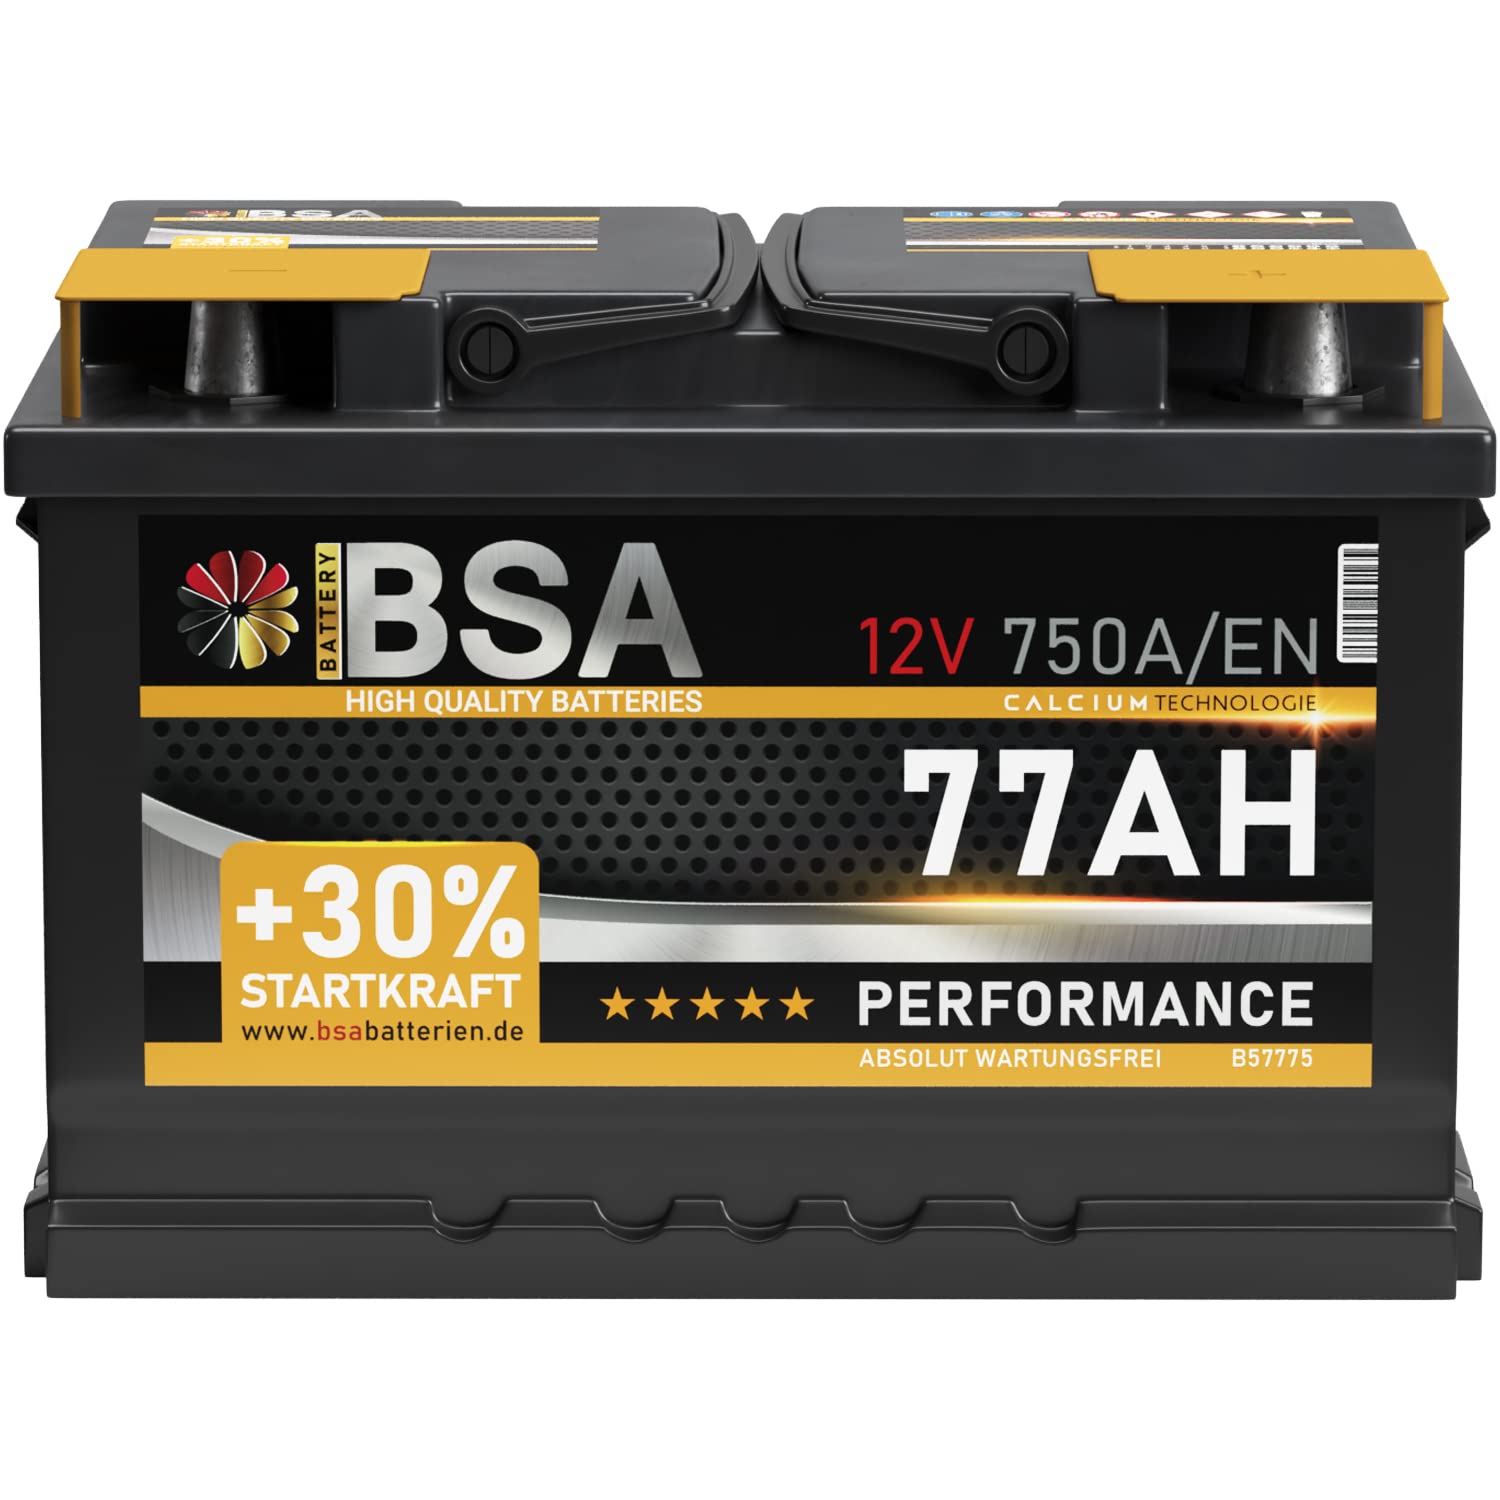 BSA Autobatterie 77Ah 12V Batterie 750A/EN +30% Startleistung ersetzt 68AH 70AH 72AH 74AH 75AH 80AH von BSA BATTERY HIGH QUALITY BATTERIES